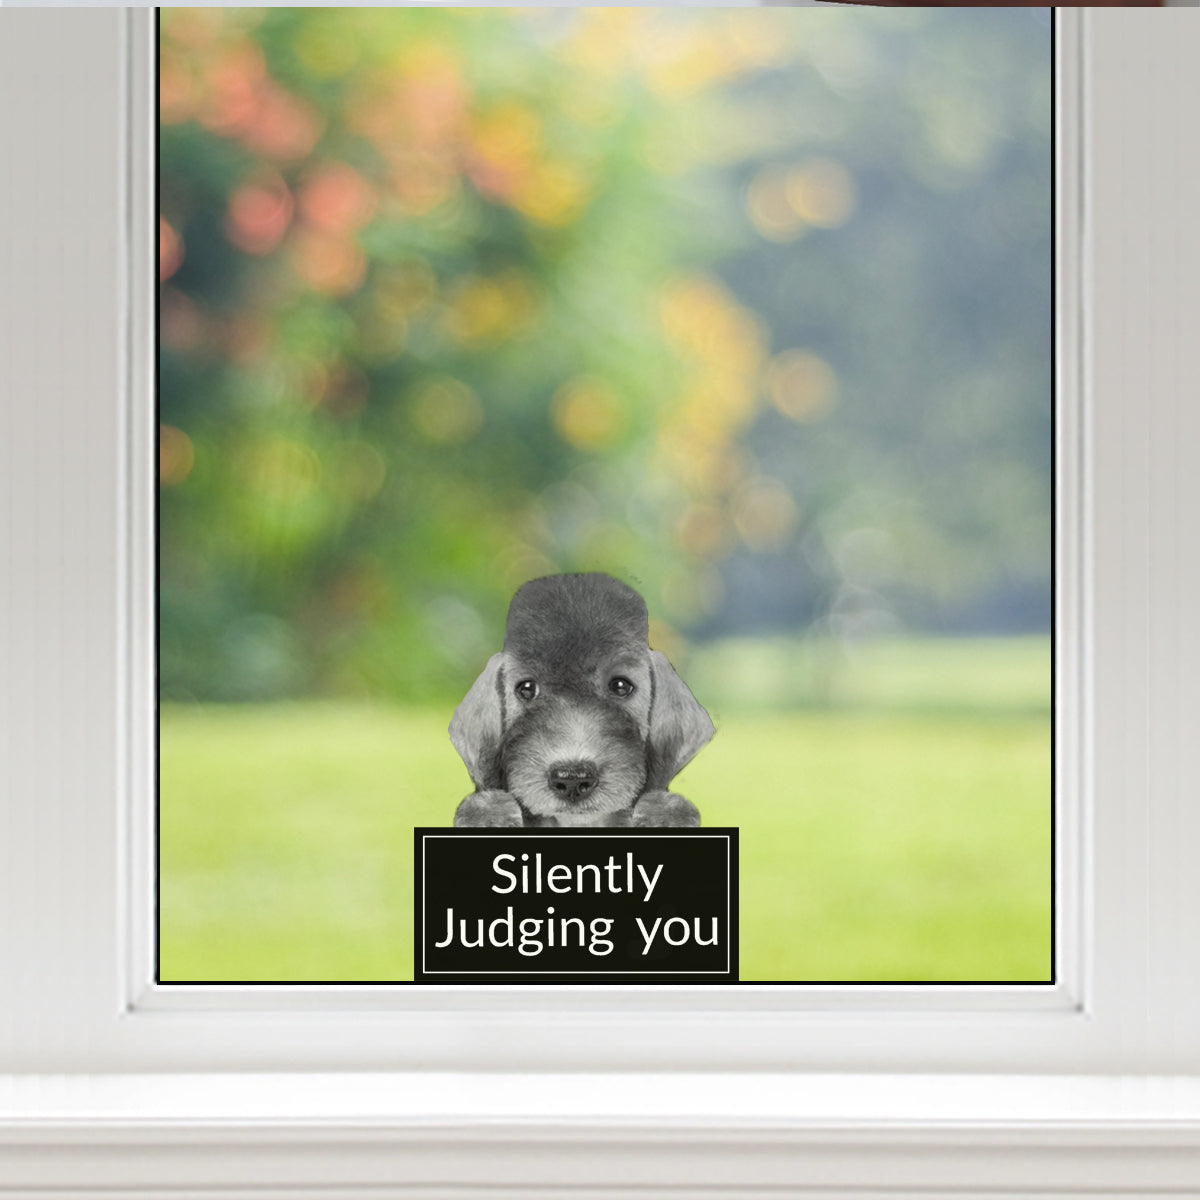 Vous juger silencieusement - Bedlington Terrier Autocollant de voiture/porte/réfrigérateur/ordinateur portable V1